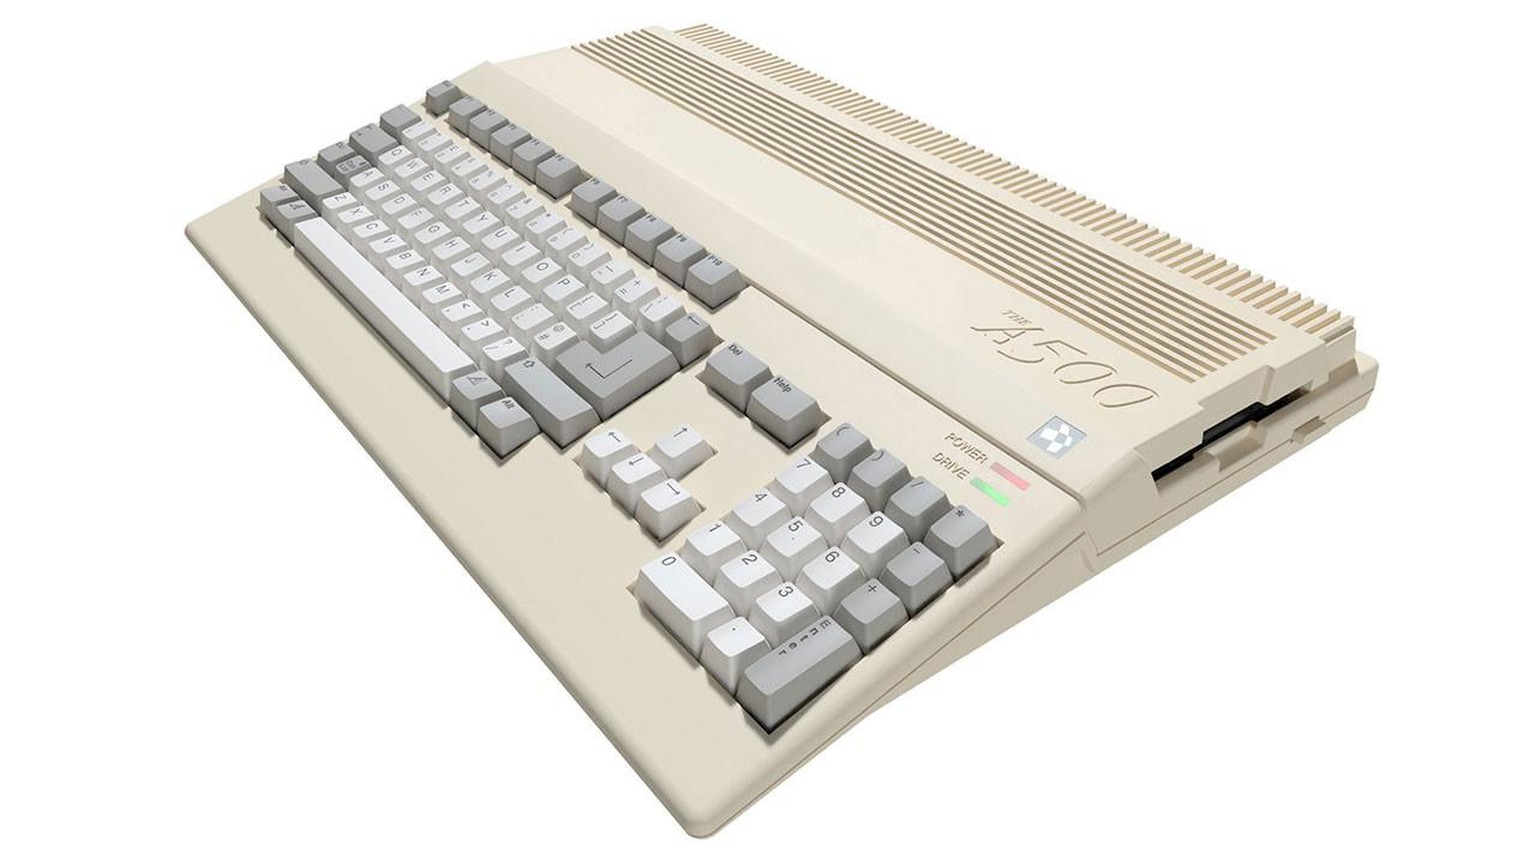 Leider keine richtige Tastatur, aber das Mini-Design weckt viele Erinnerungen.